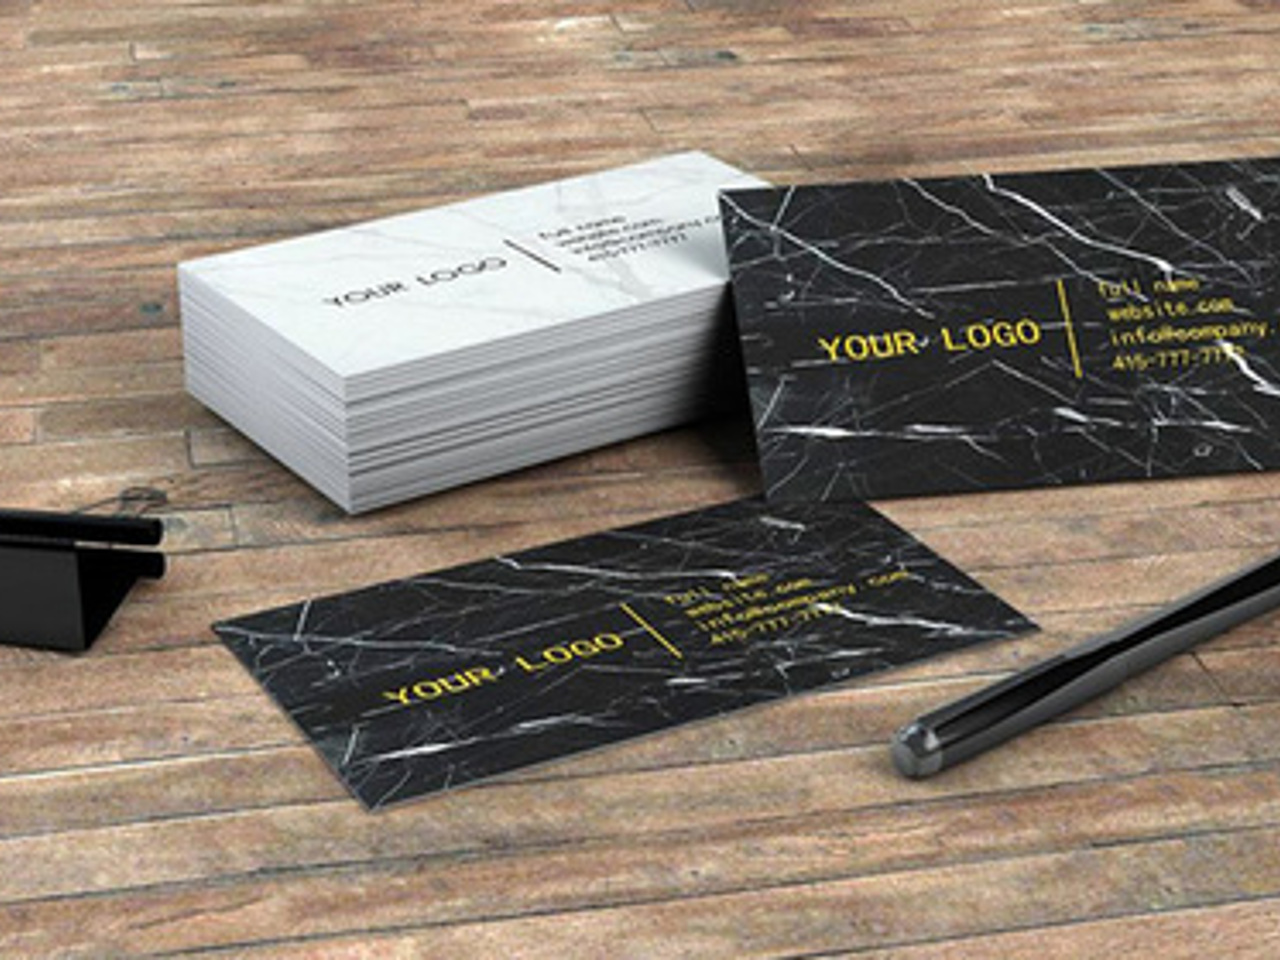 Американская фирма создала каменные визитки - Рамблер/субботний